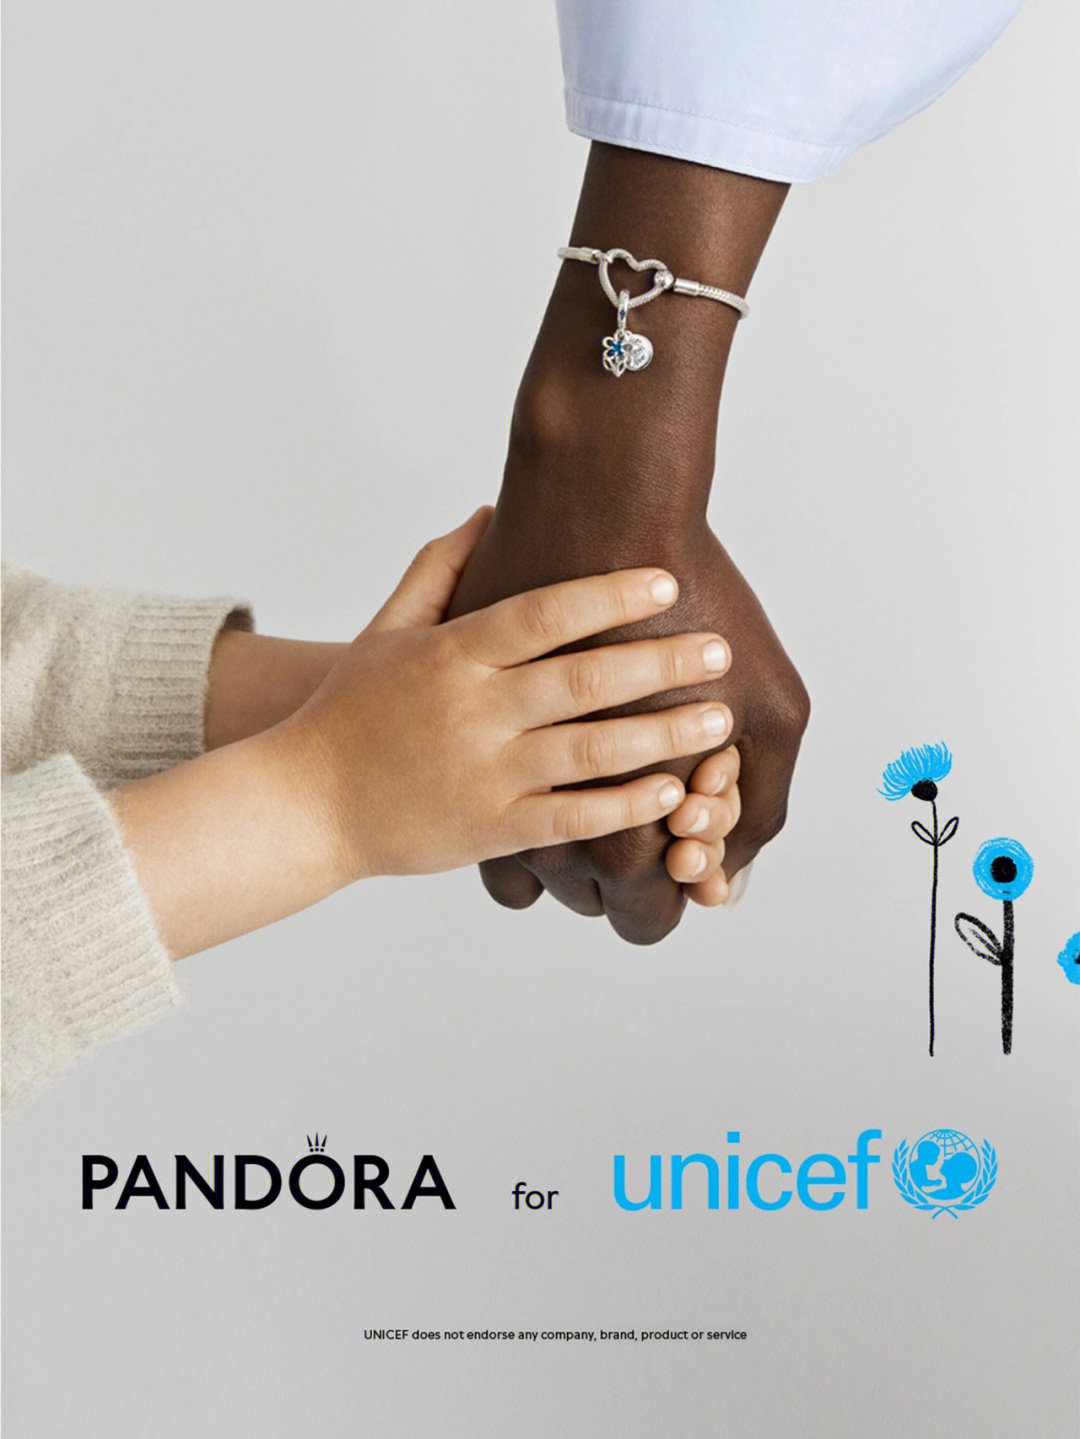 我们推出了一朵超有意义的小蓝花–  pandora与联合国儿童基金会